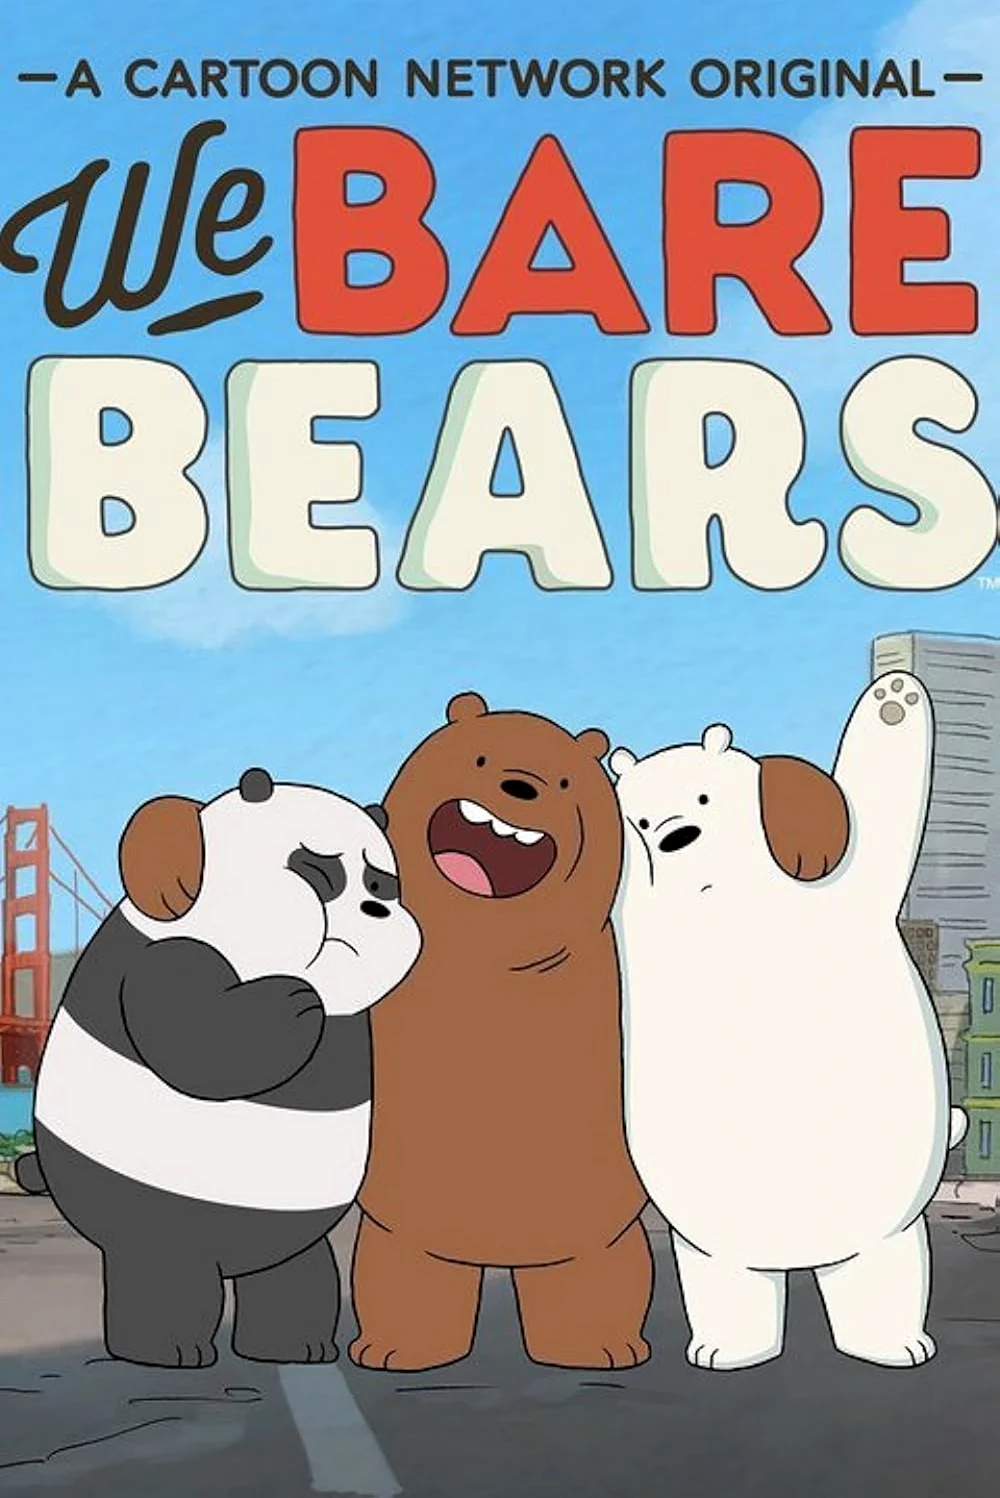 Мультфильм вся правда о медведях. Картинка из мультфильма